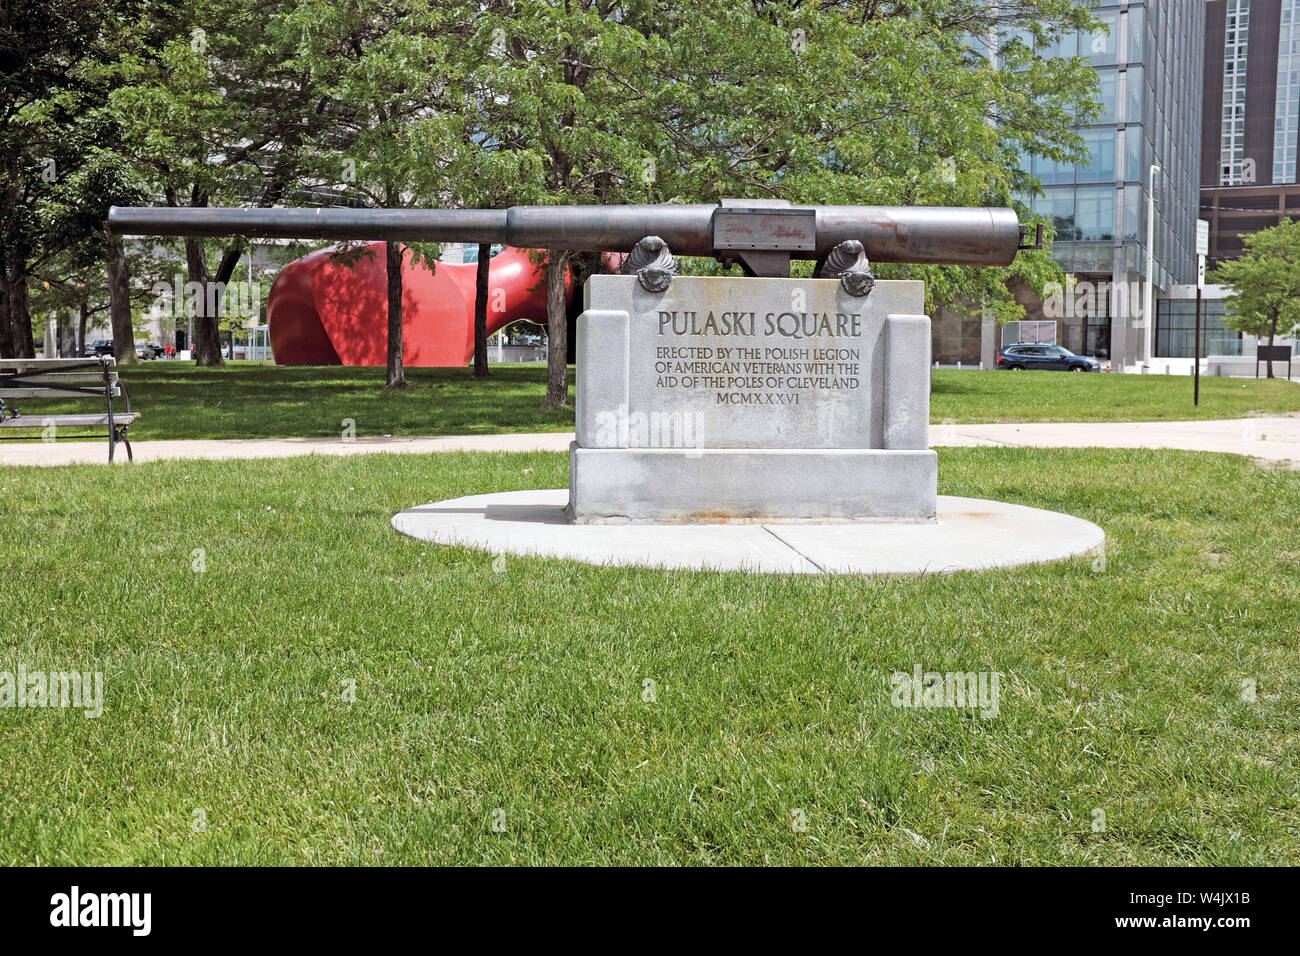 L'eroe della guerra di indipendenza americana, il generale Casimir Pulaski, polacco, è onorato dal fucile polacco commemorativo di Cleveland, Ohio, USA. Foto Stock